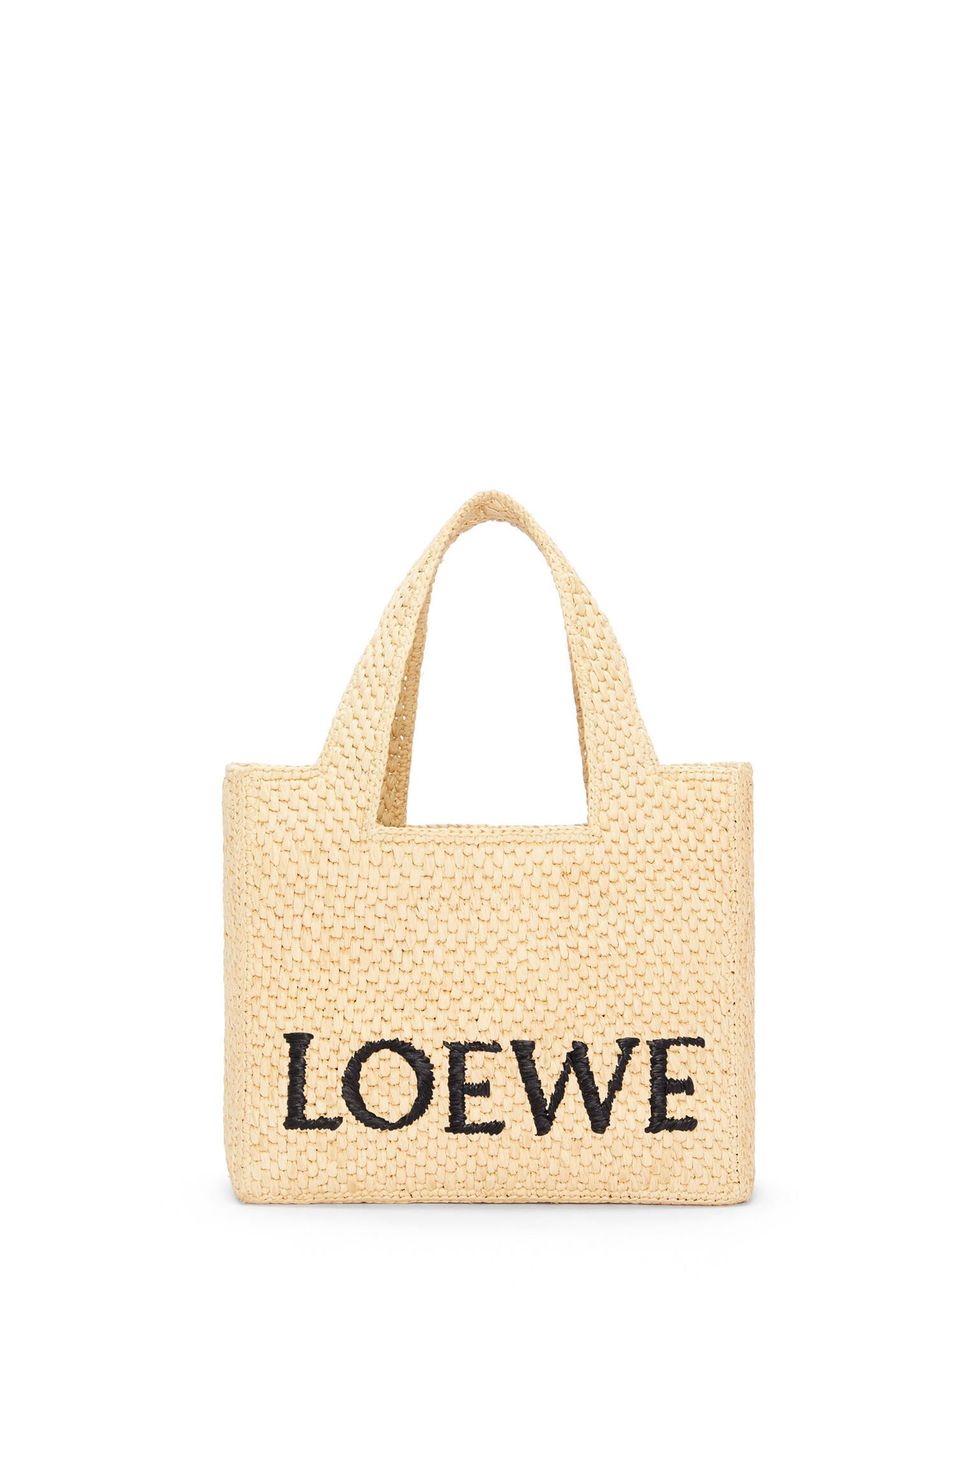 Este capazo de Loewe es el bolso más visto del verano (otra vez